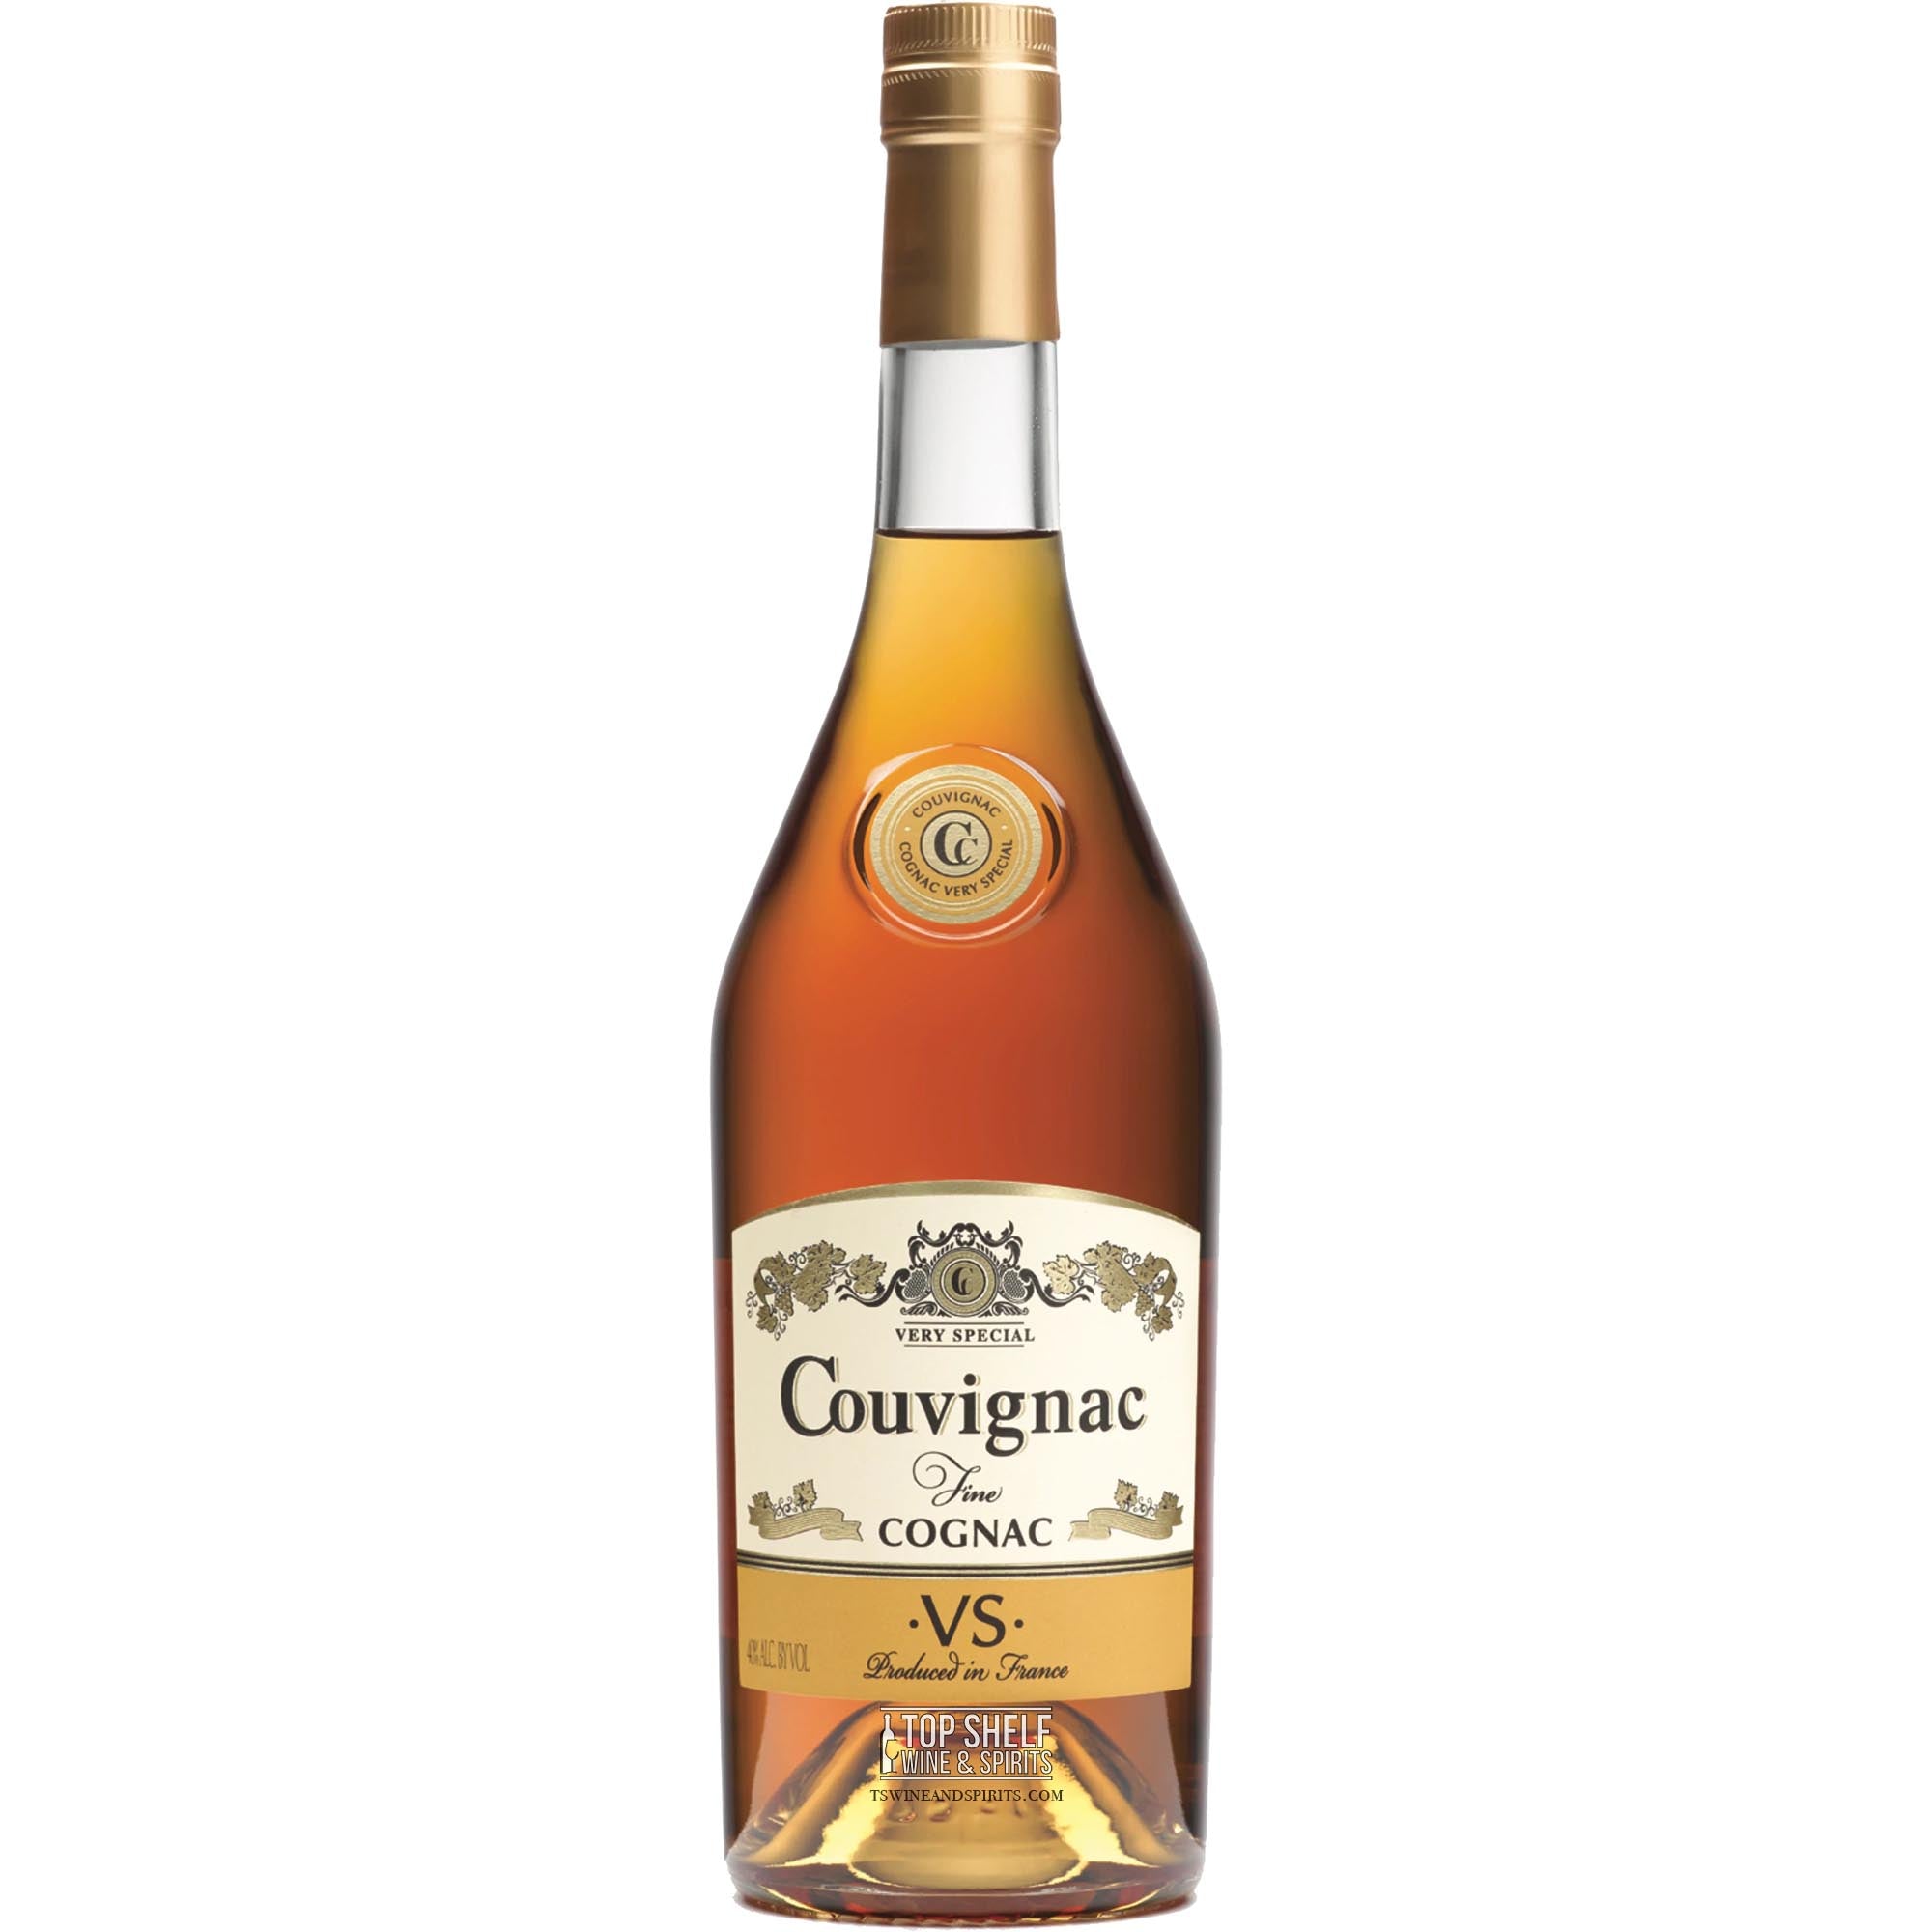 Sazerac Cognac & Original Finest Fils Forge de